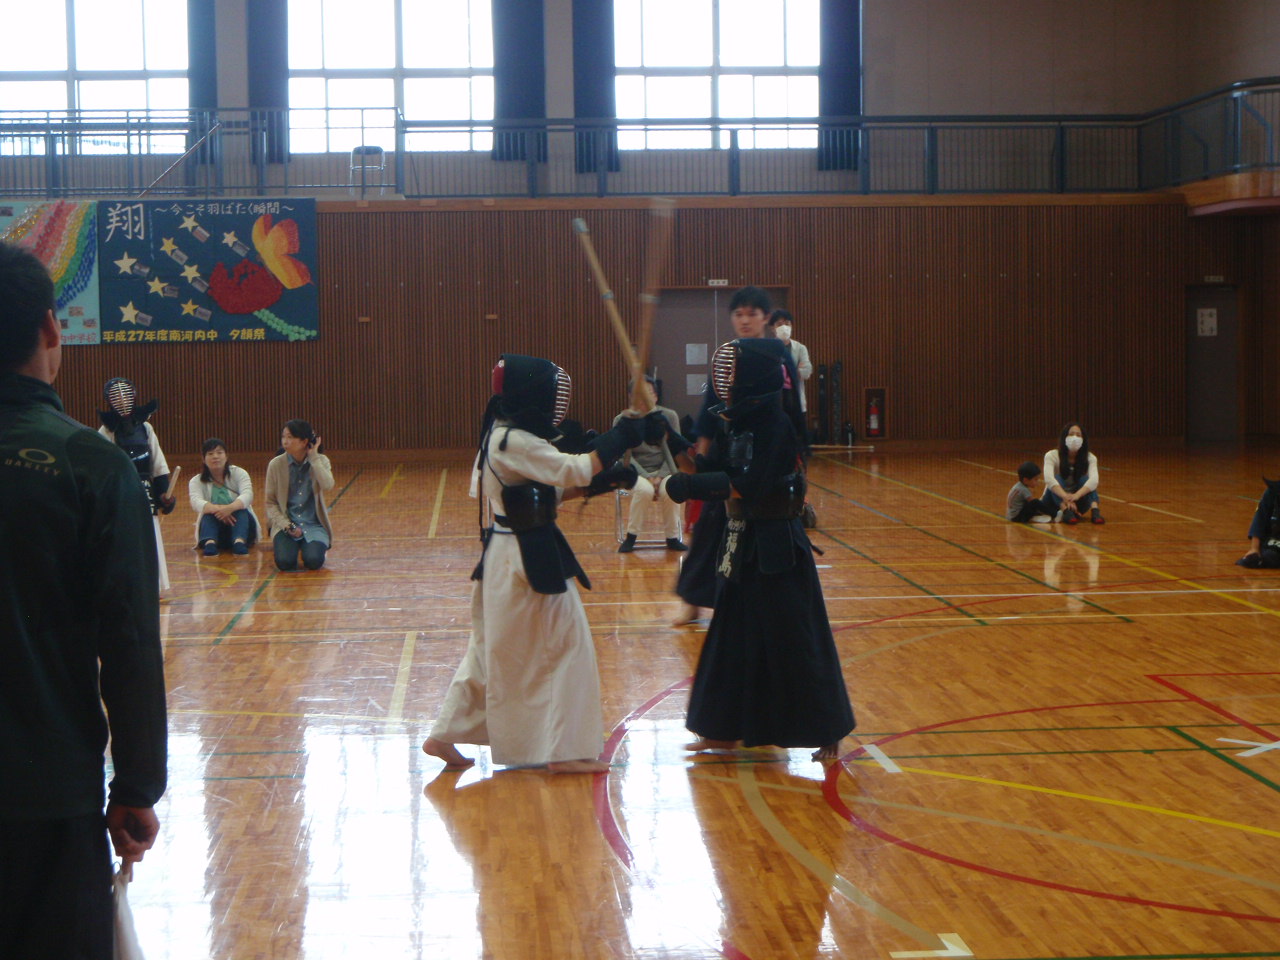 剣道の写真